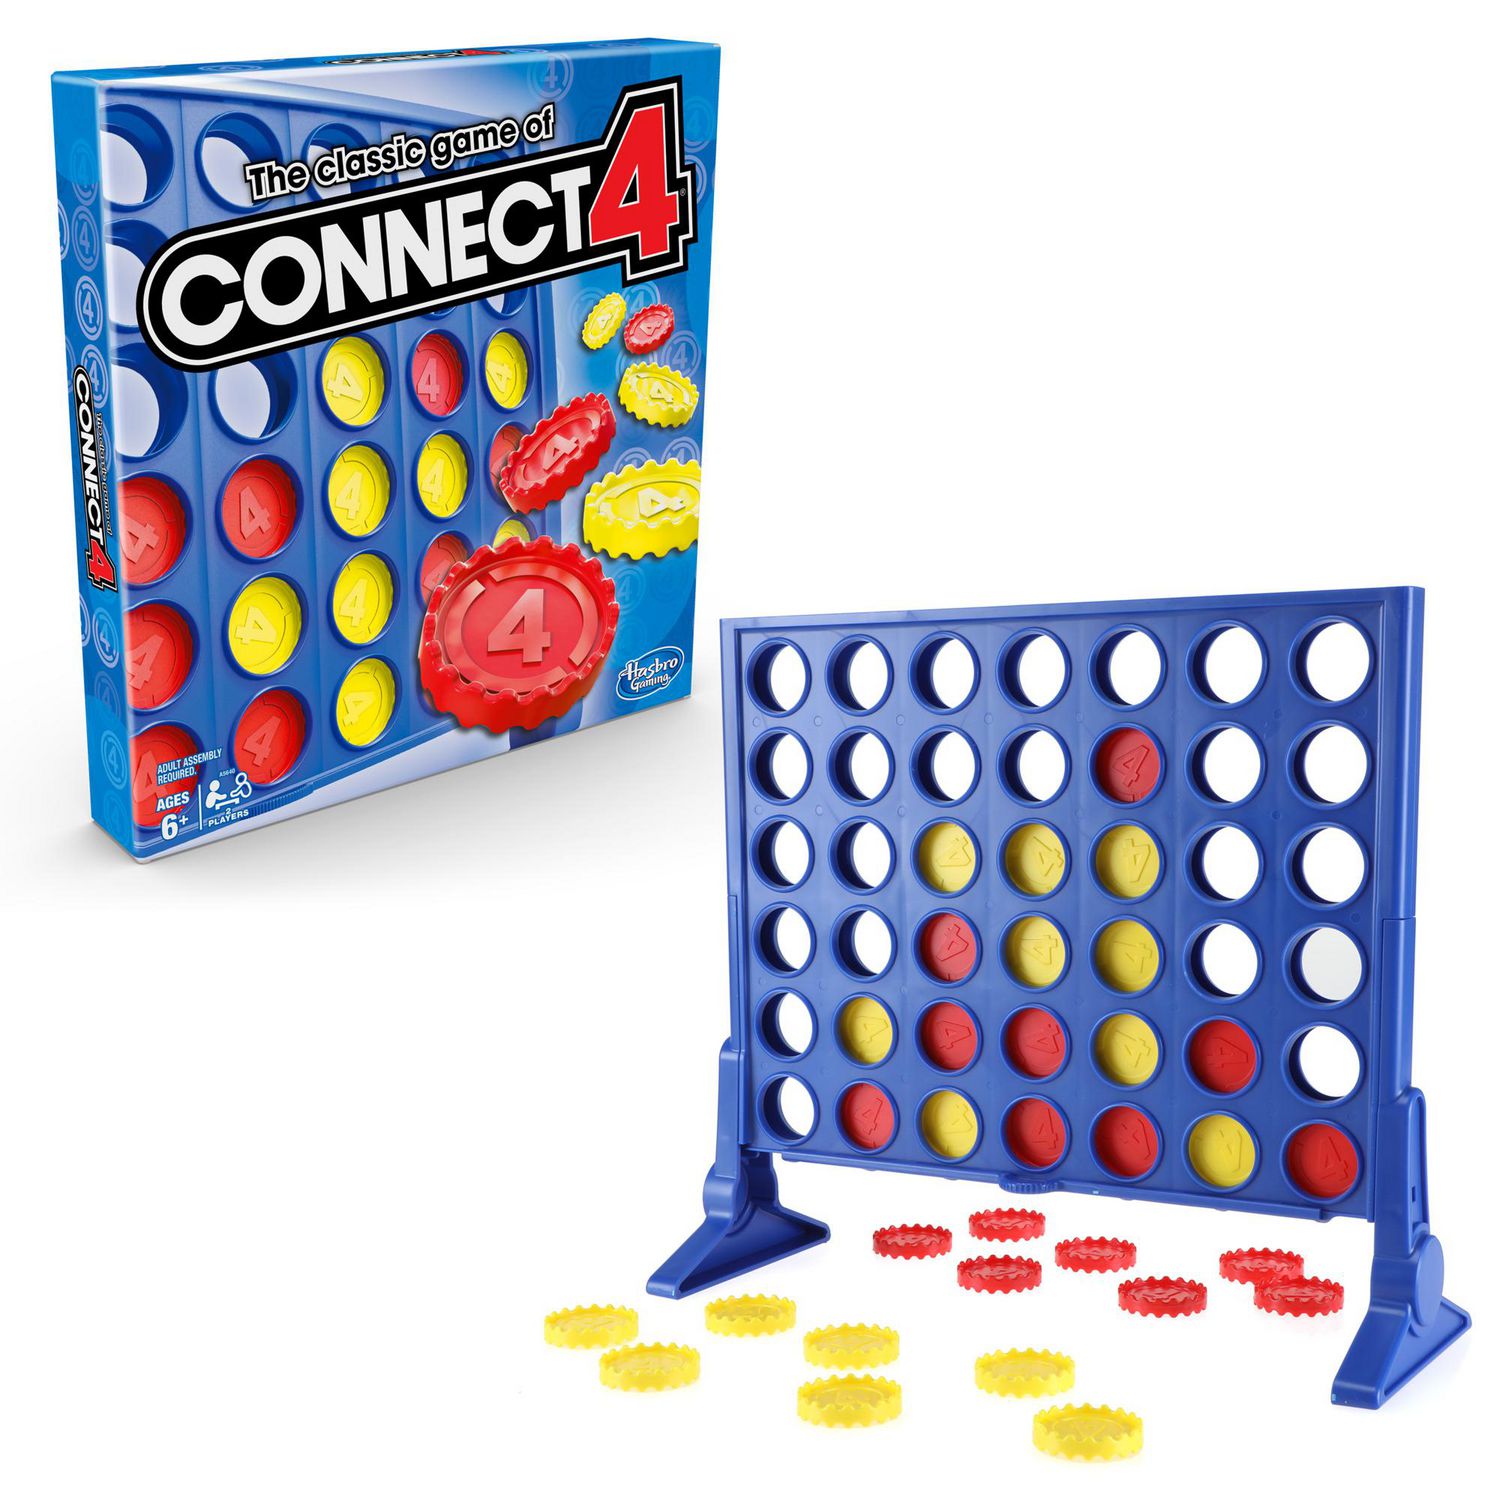 Connect 4 Spin Game, comprend Spinning Connect 4 Grid, jeux de société à 2  joueurs pour la famille et les enfants, jeux de société de stratégie, à  partir de 8 ans 